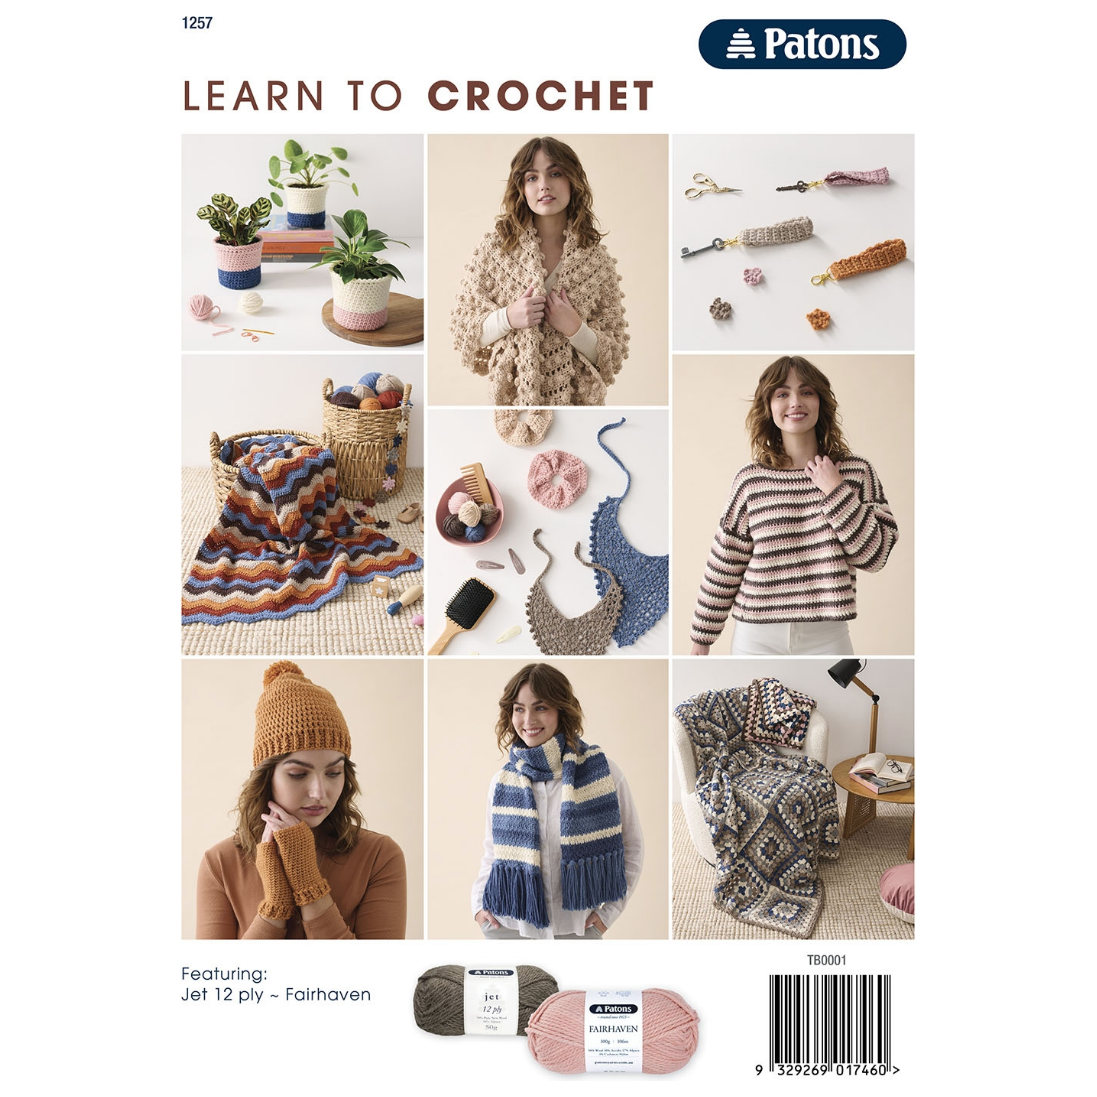 Learn to Crochet Guide